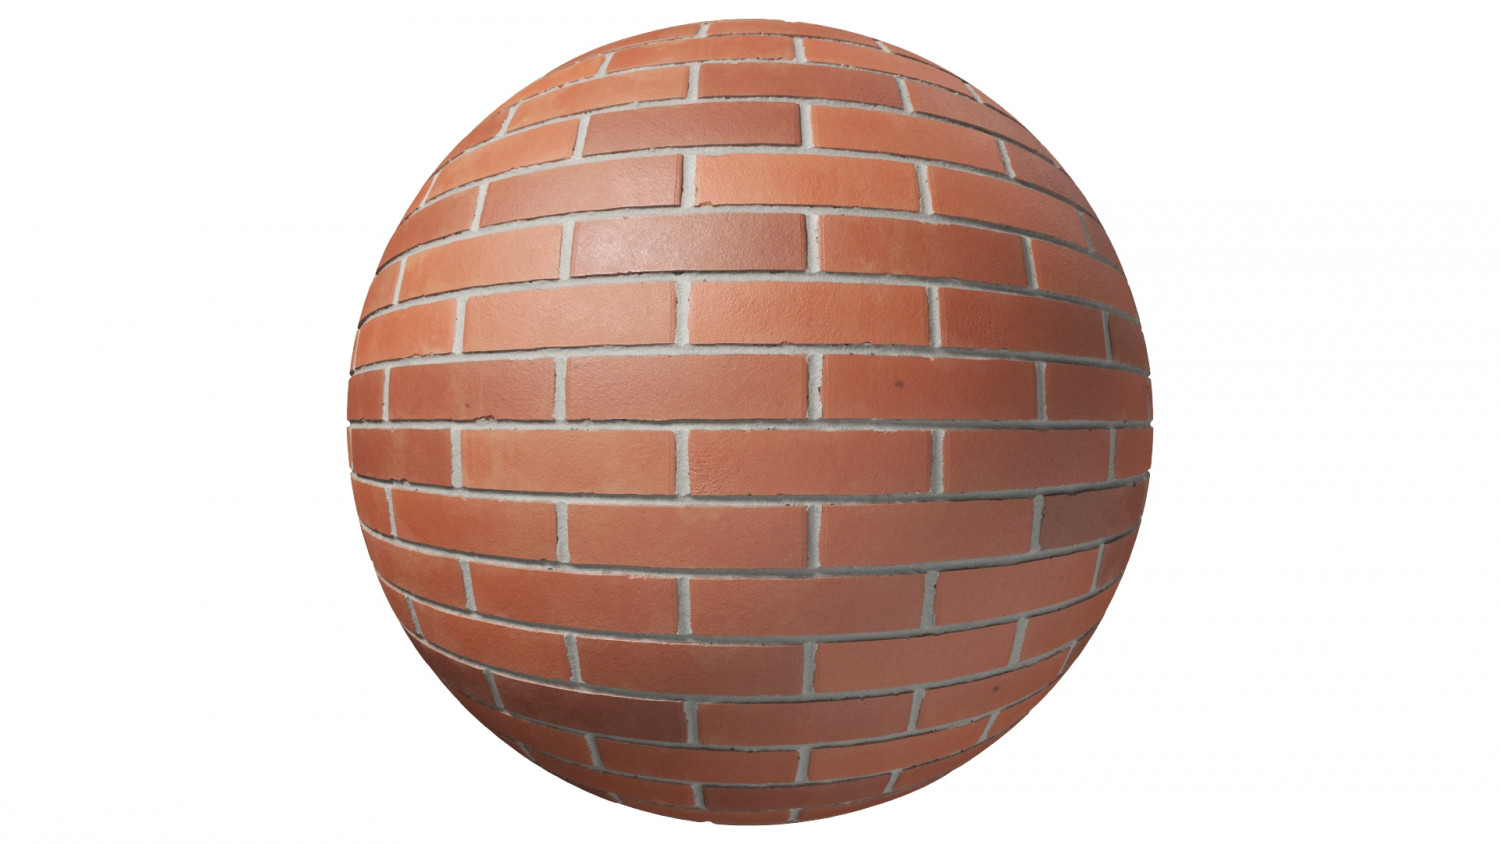 New orange brick texture